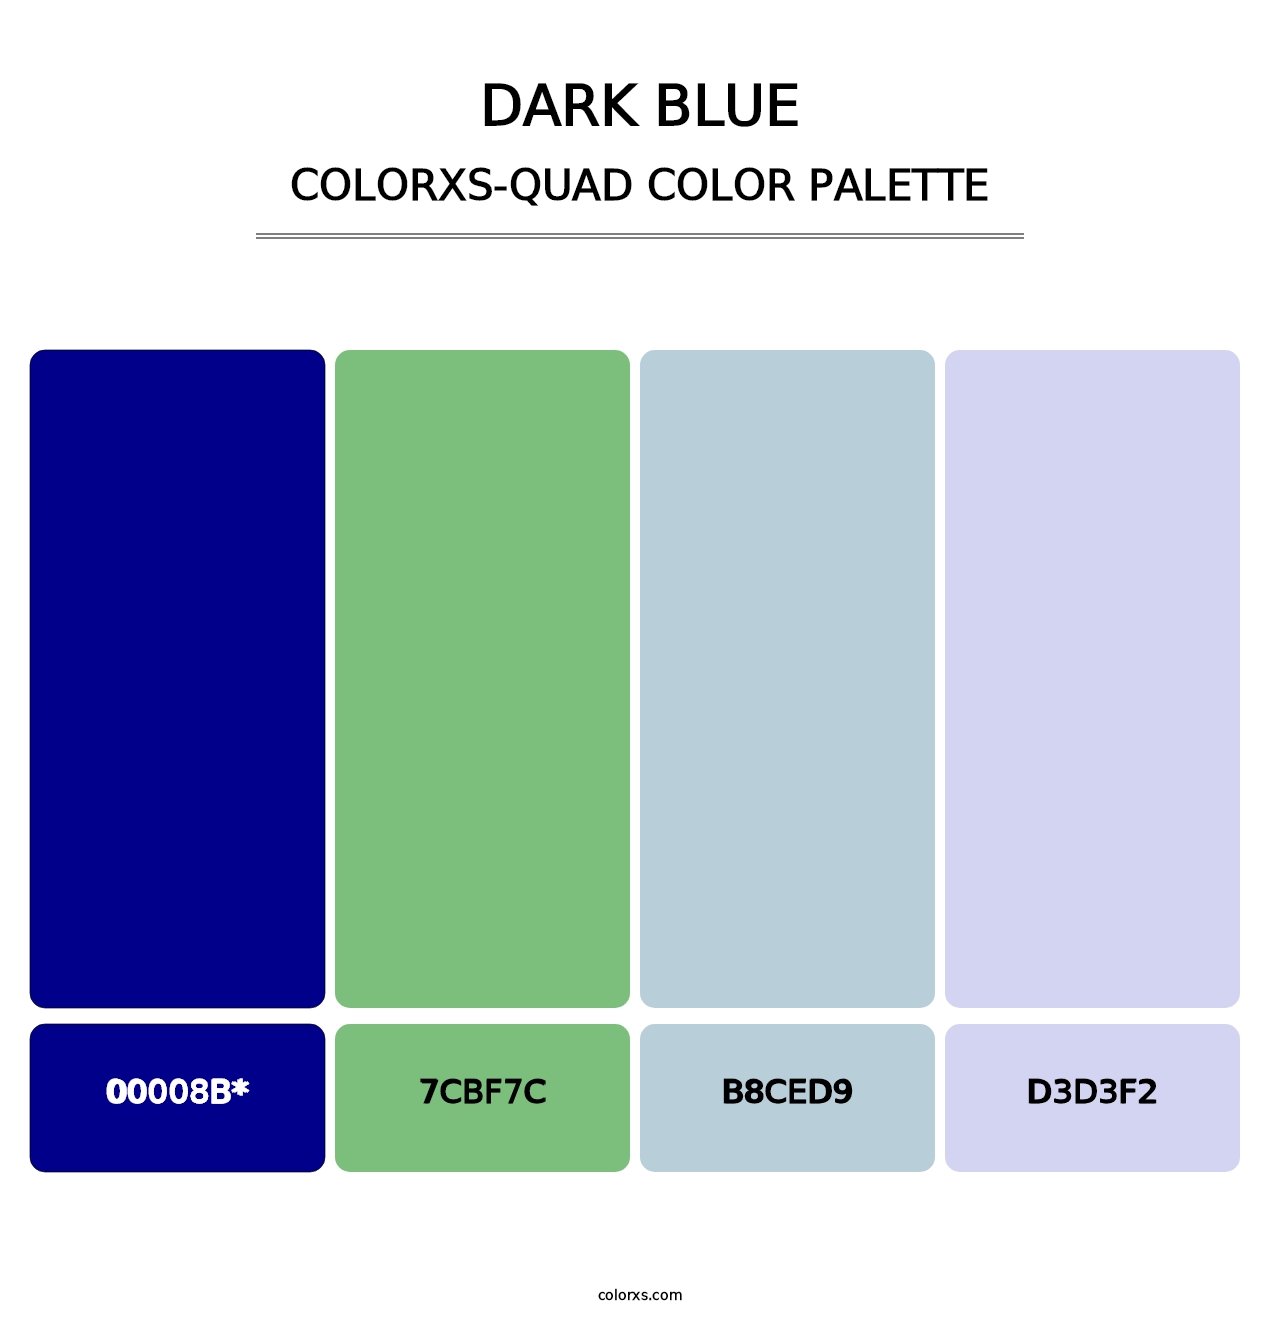 Dark Blue - Colorxs Quad Palette